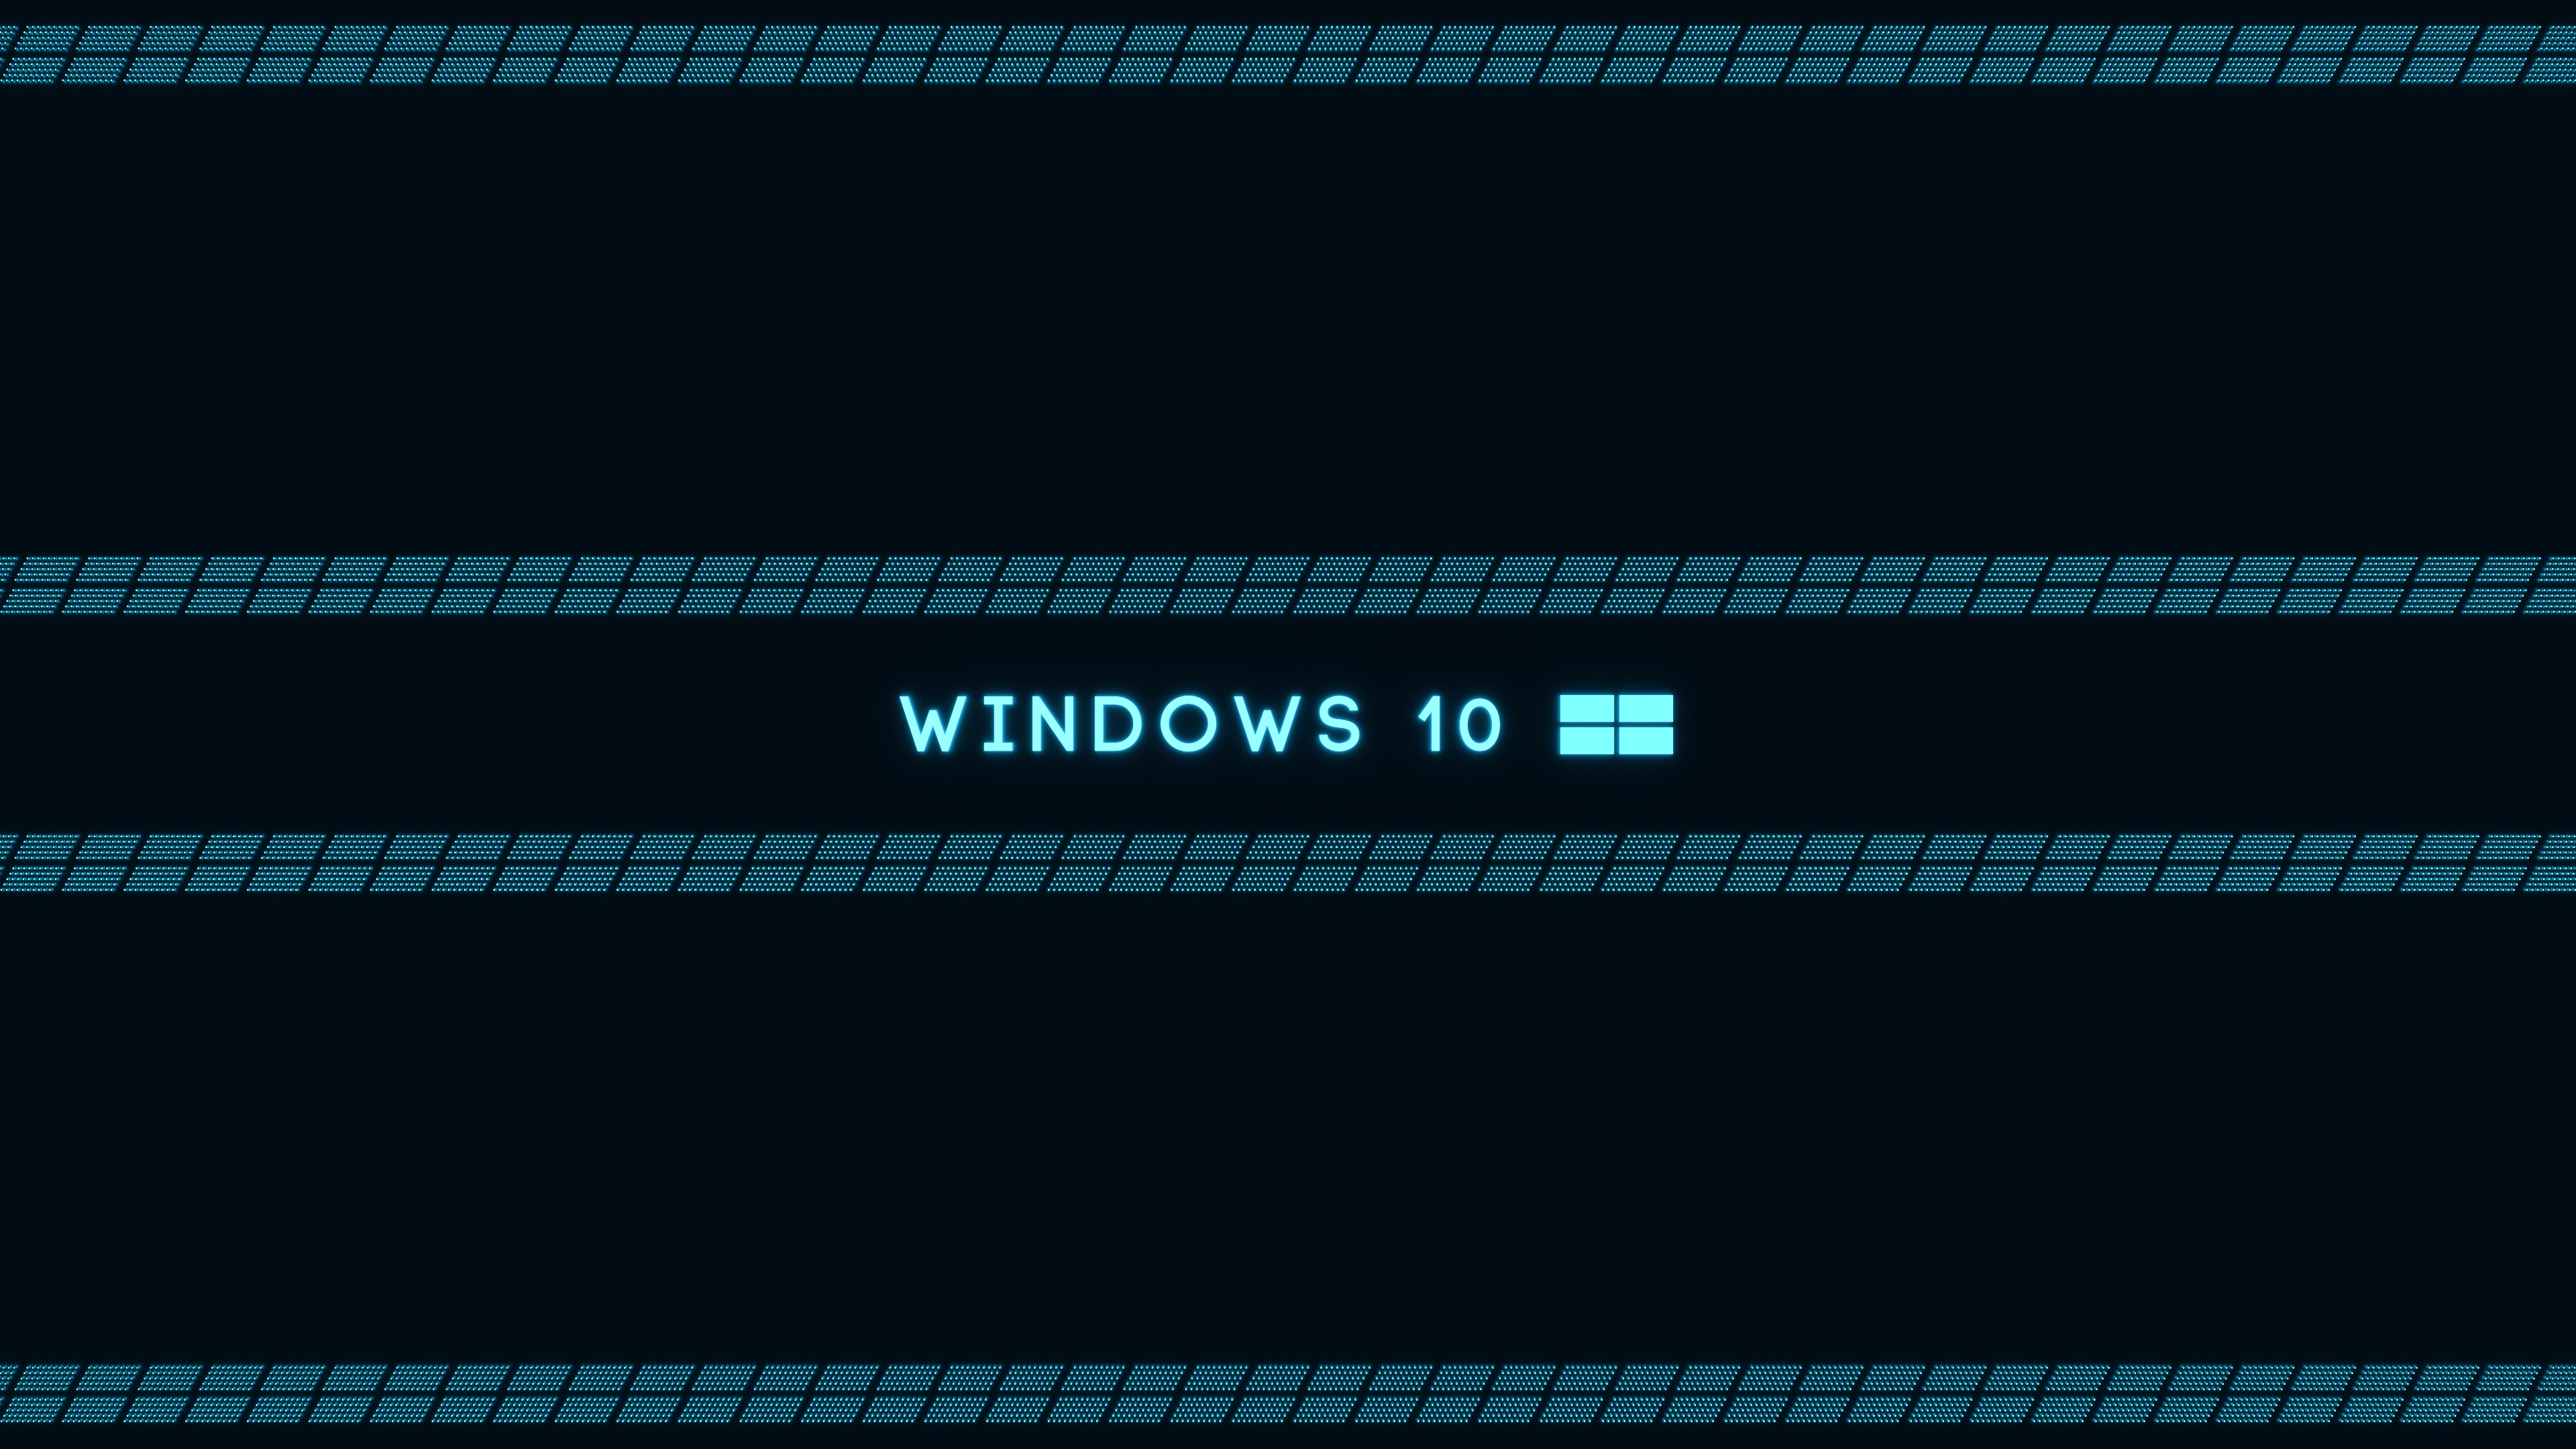 Windows 10 3840x2160